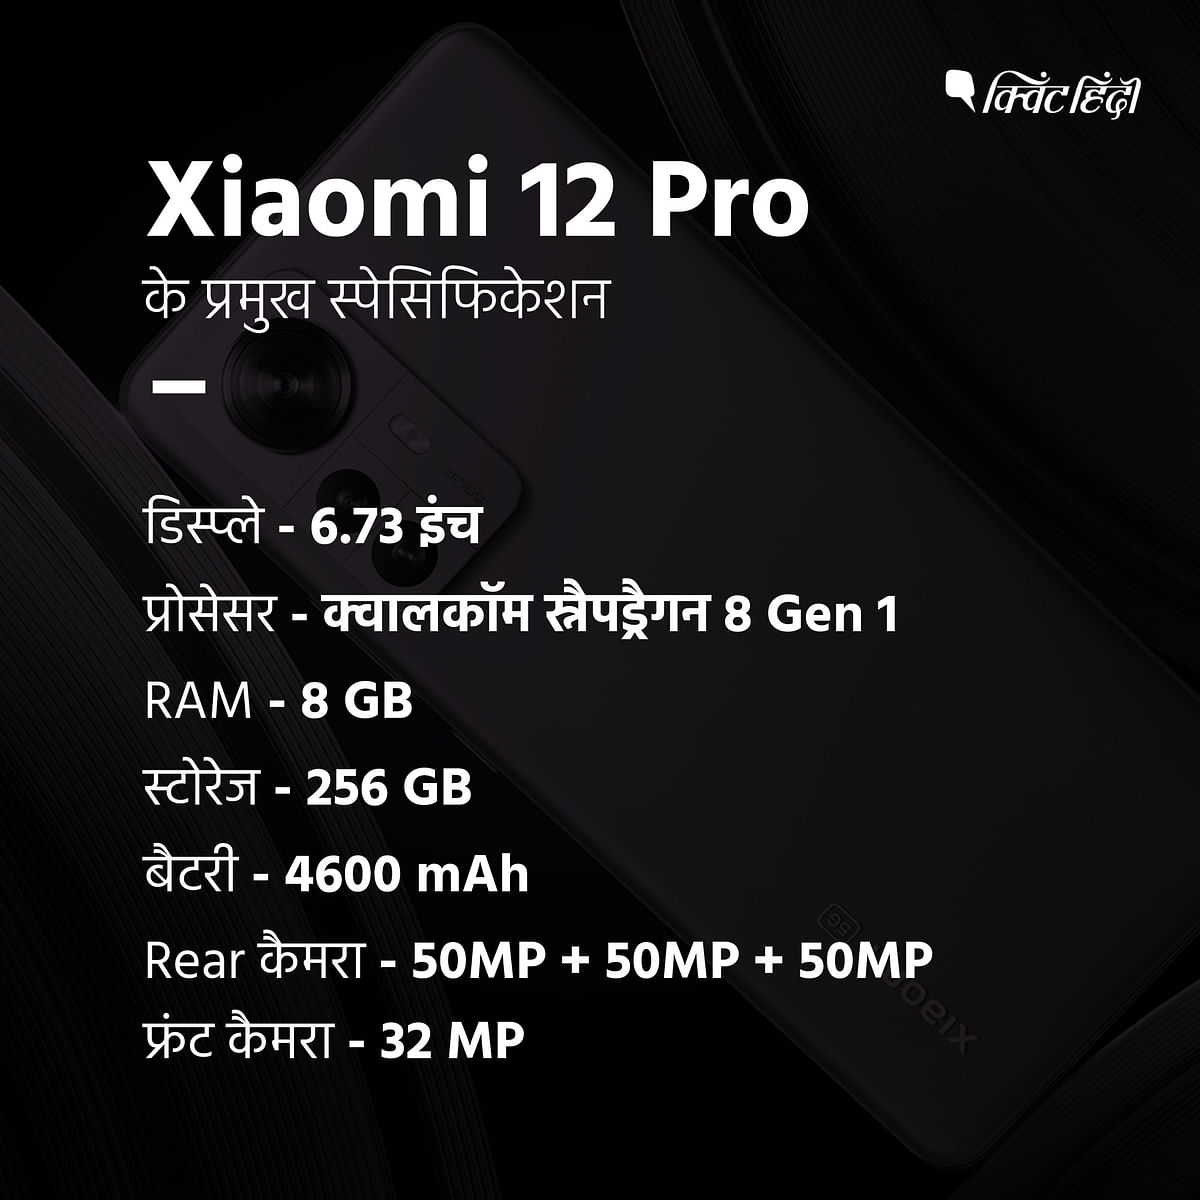 Xiaomi 12 Pro की कीमत इसके बेस मॉडल 8GB रैम के लिए 62,999 रुपये है और 12GB रैम वैरिएंट की कीमत 66,999 रुपये है.